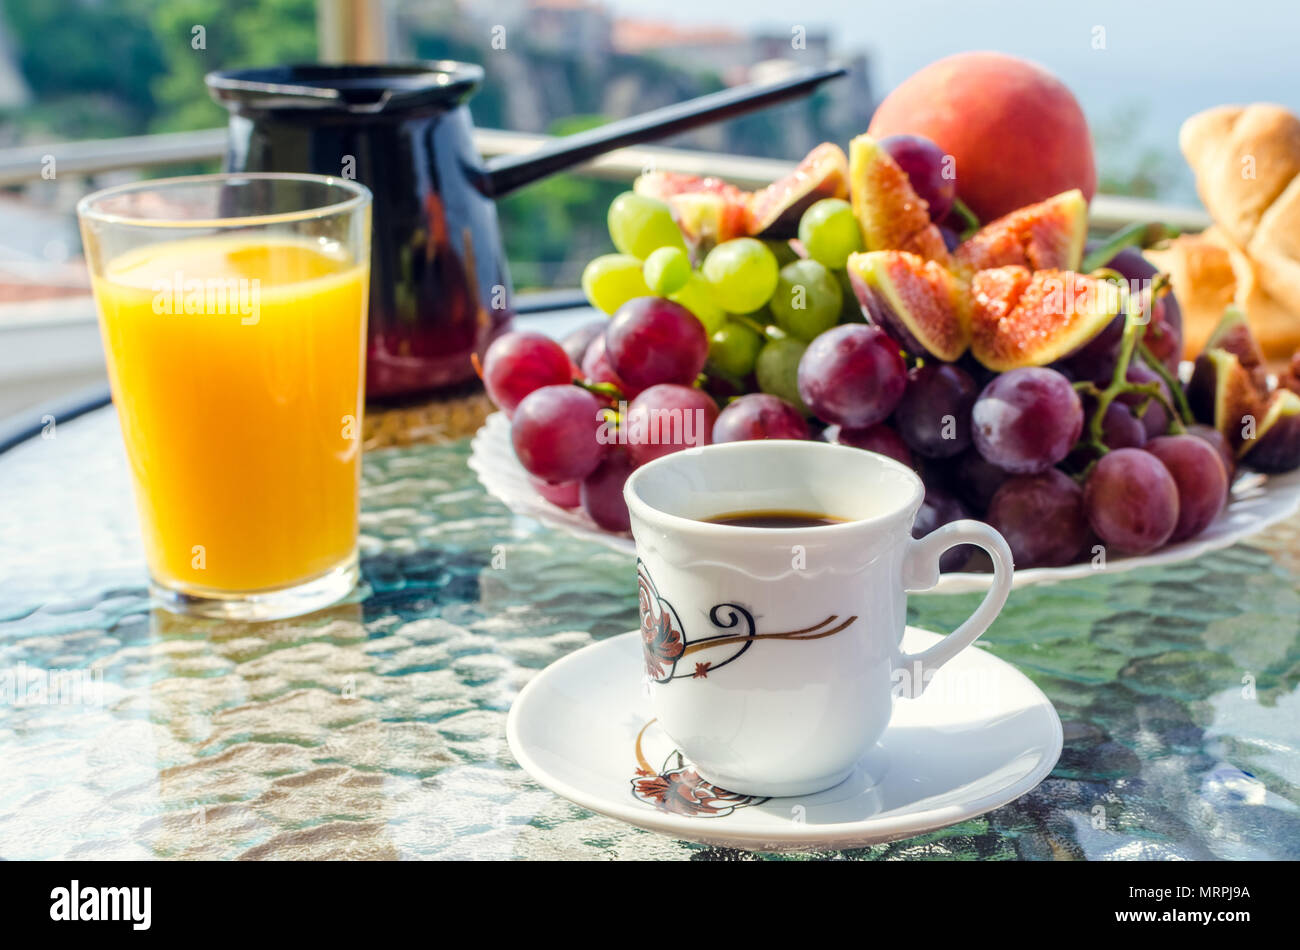 Petit déjeuner sain sur la table avec une tasse de café, un verre de jus d'orange, une plaque de la bourgogne blanc et raisins, figues, de pêche et de café turc Banque D'Images